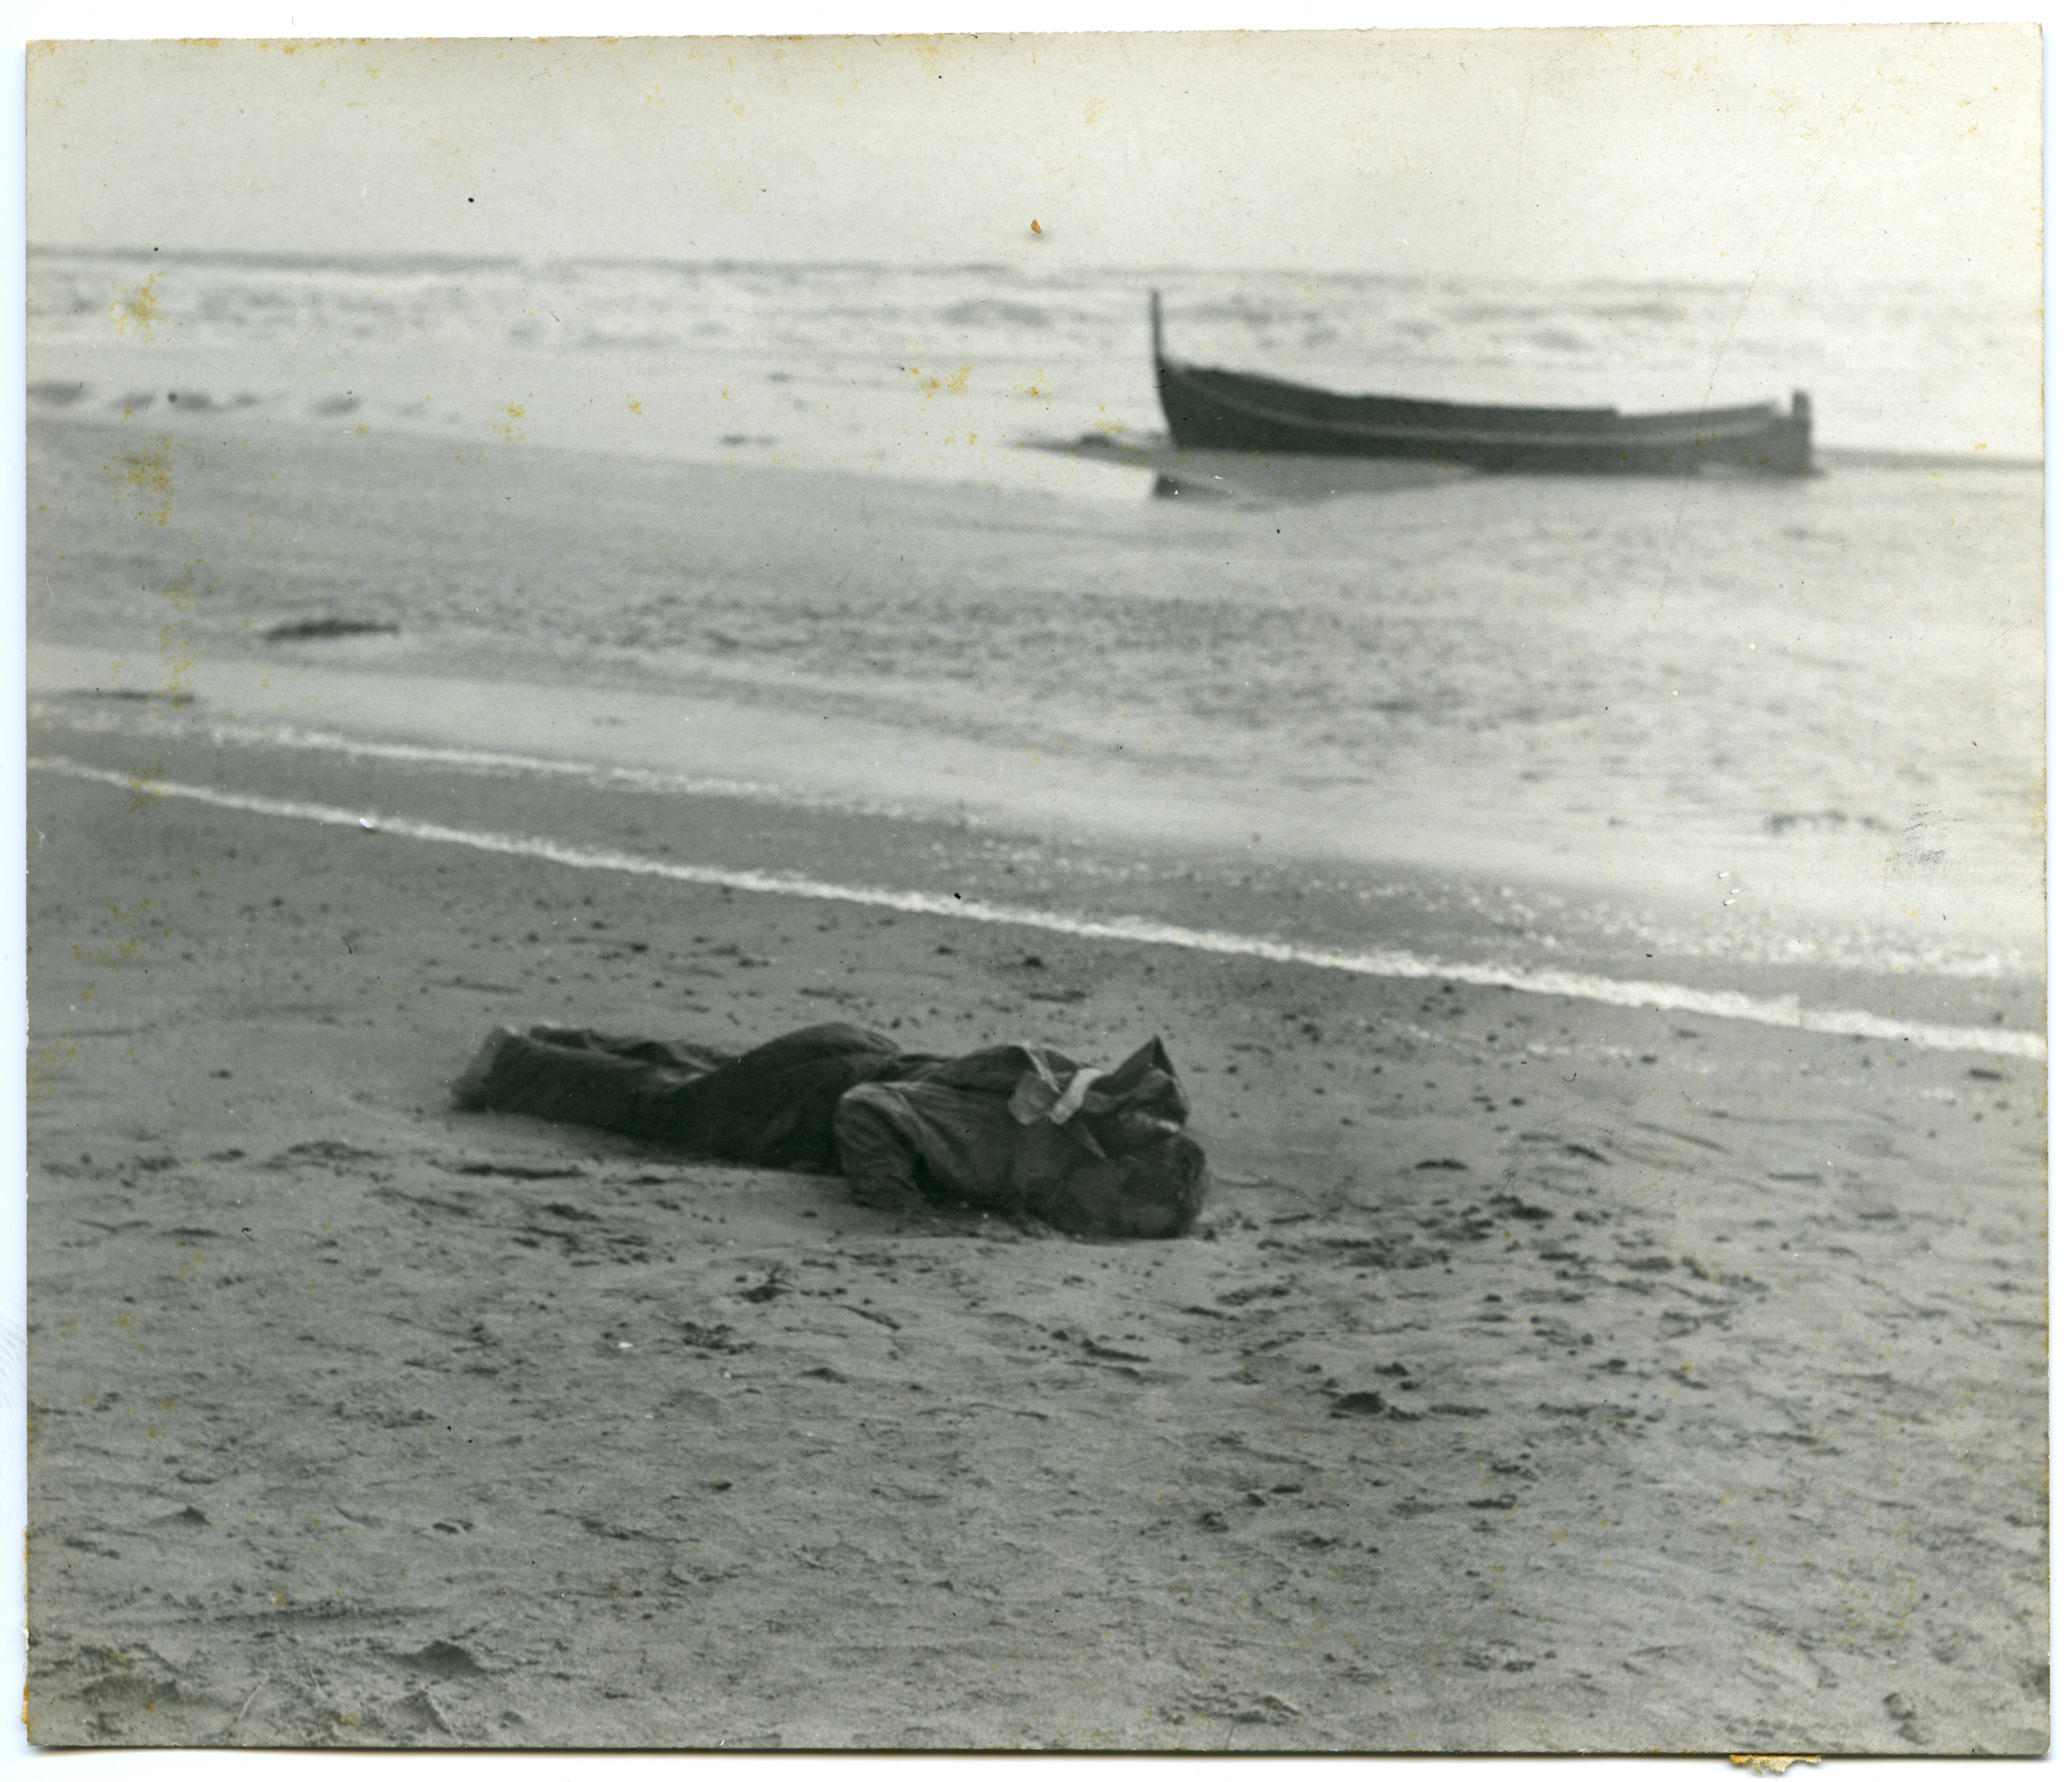 El cos d'un mariner ofegat pel temporal a la platja de Can Tunis / Frederic Ballell (AFB) (1 de febrer del 1911)
